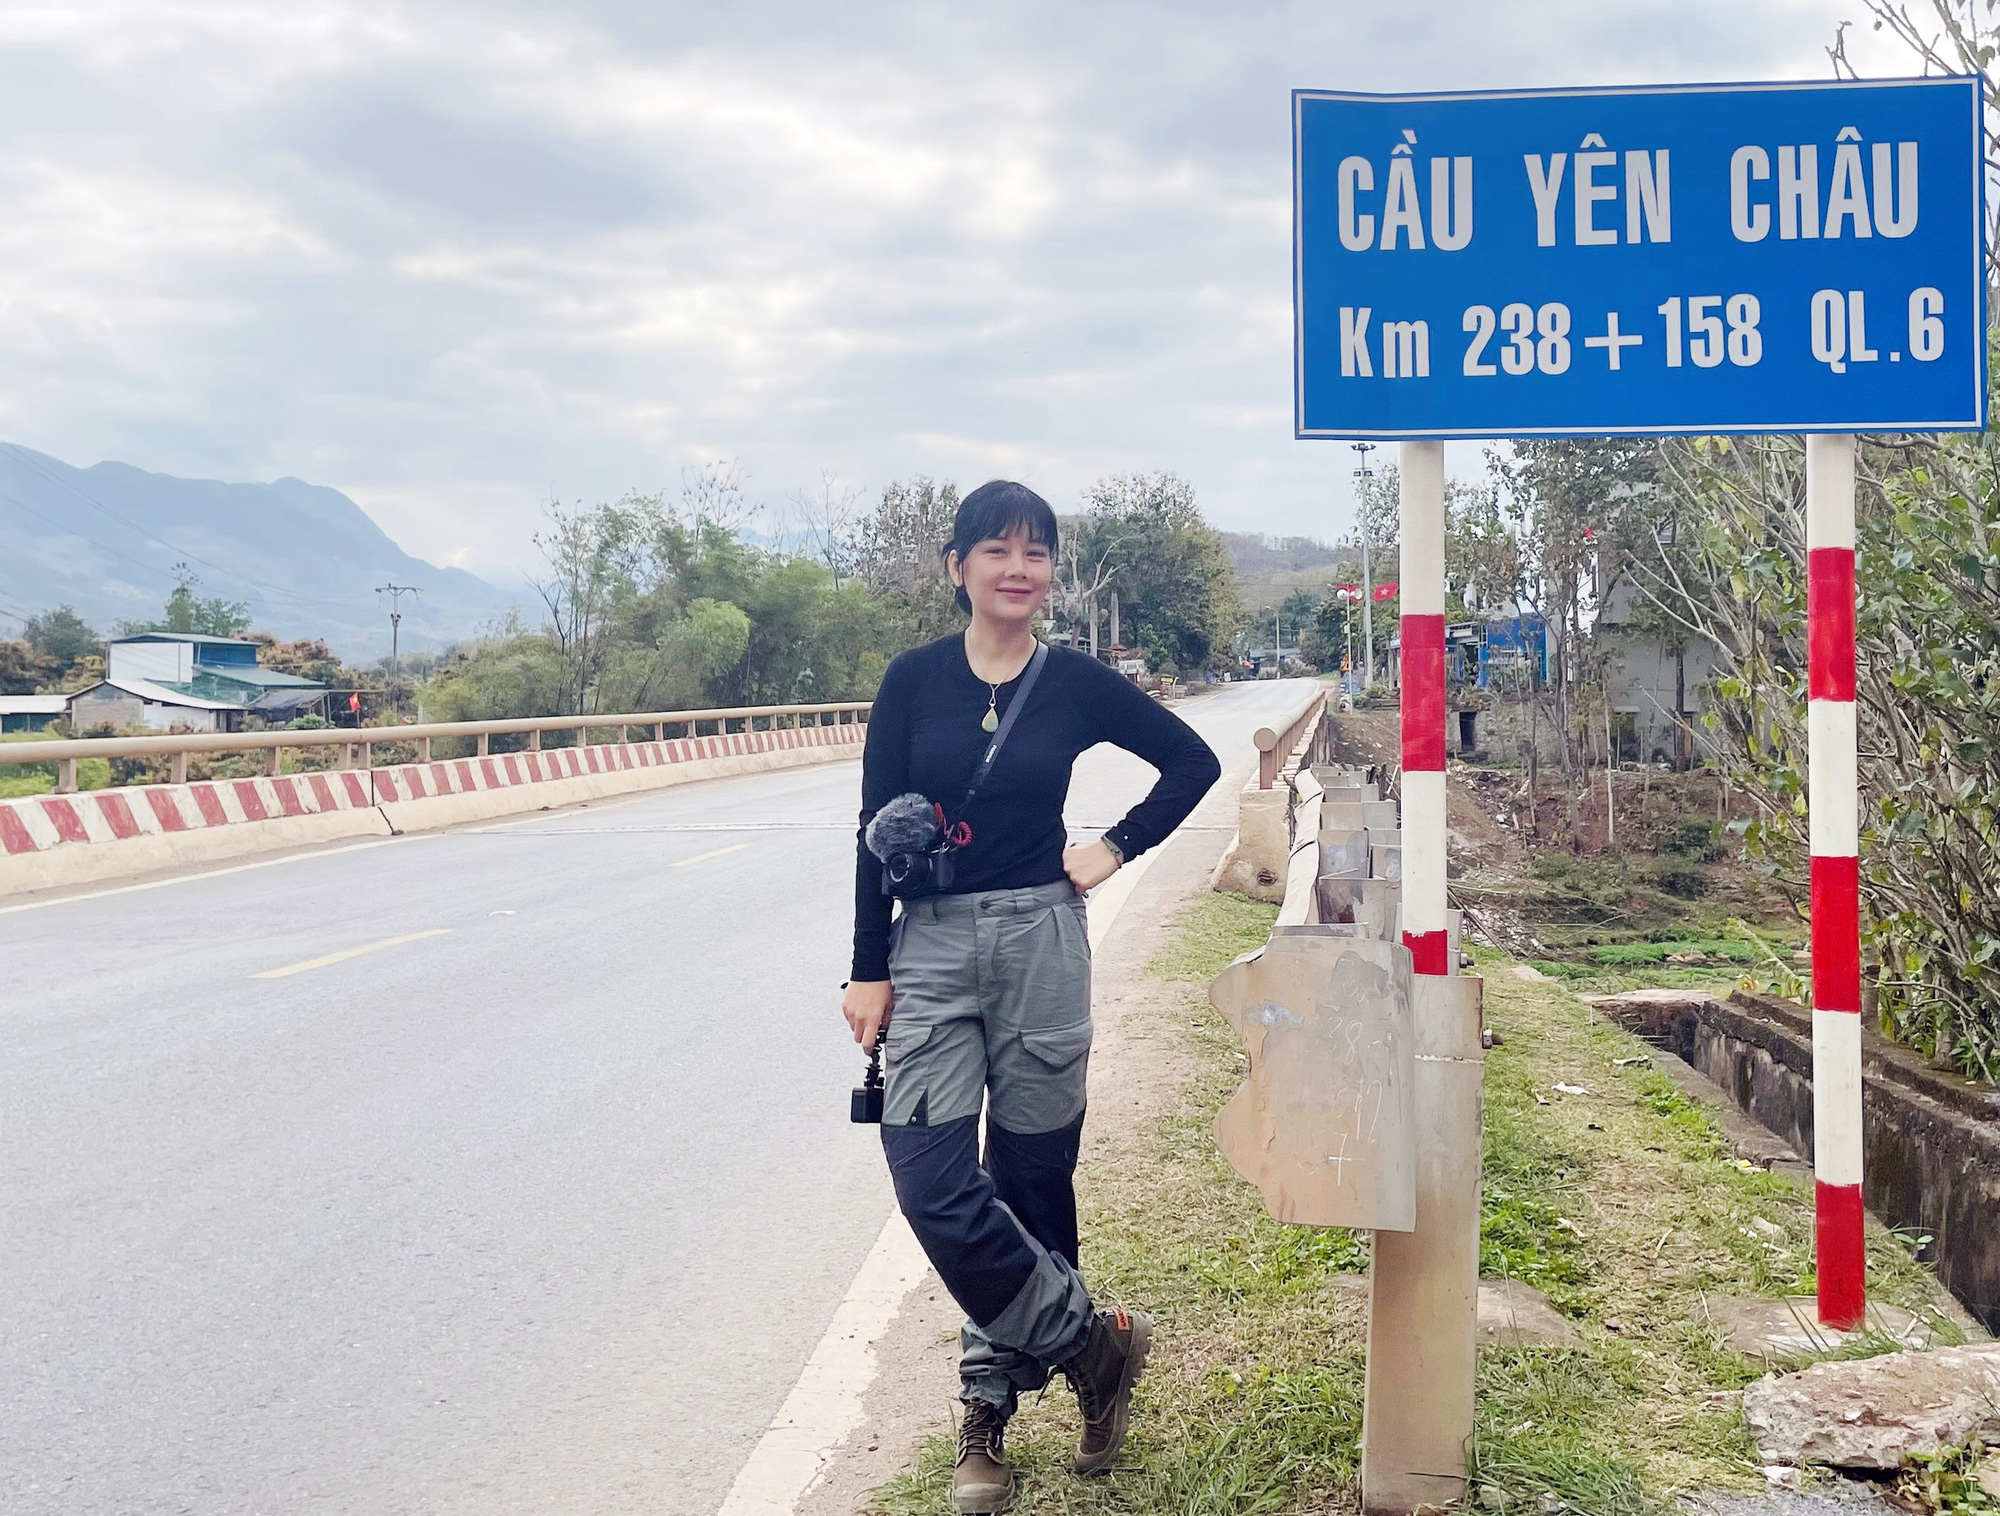 Nhà báo Bông Mai với hành trình xuyên Việt truyền cảm hứng cho phụ nữ - Ảnh 1.